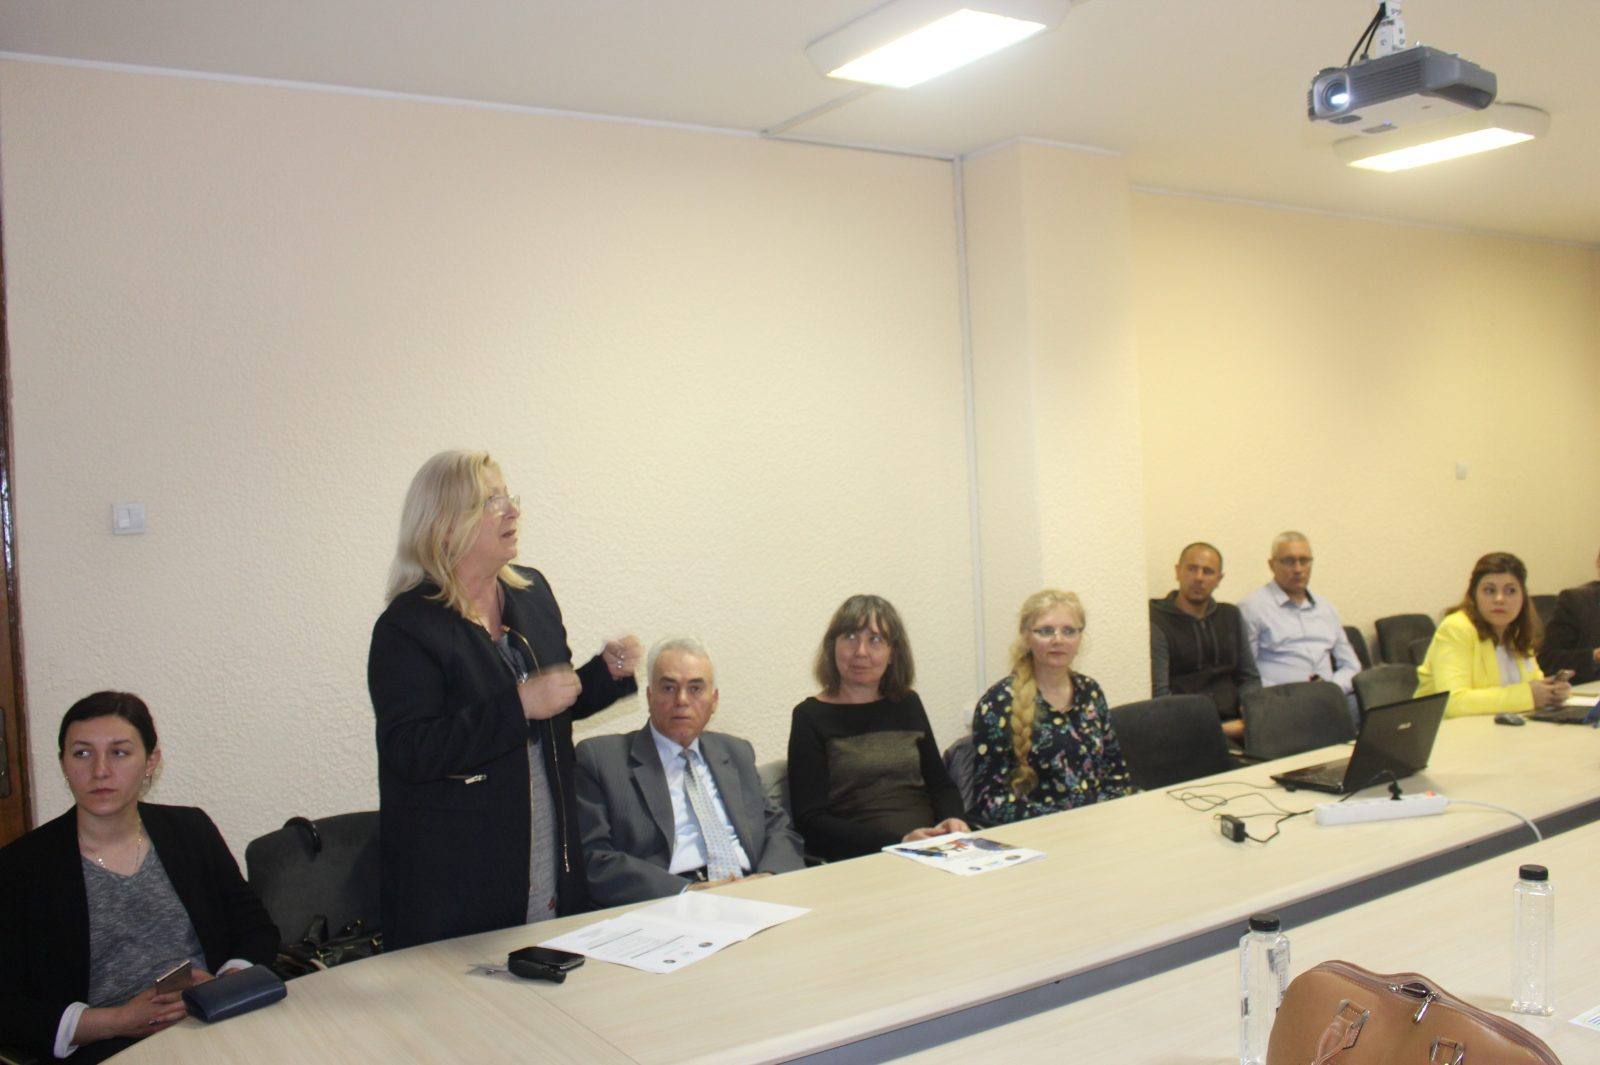 cea-de-a-doua-intalnire-a-consiliului-consultativ-national-din-romania-in-cadrul-proiectului-mypeermentor